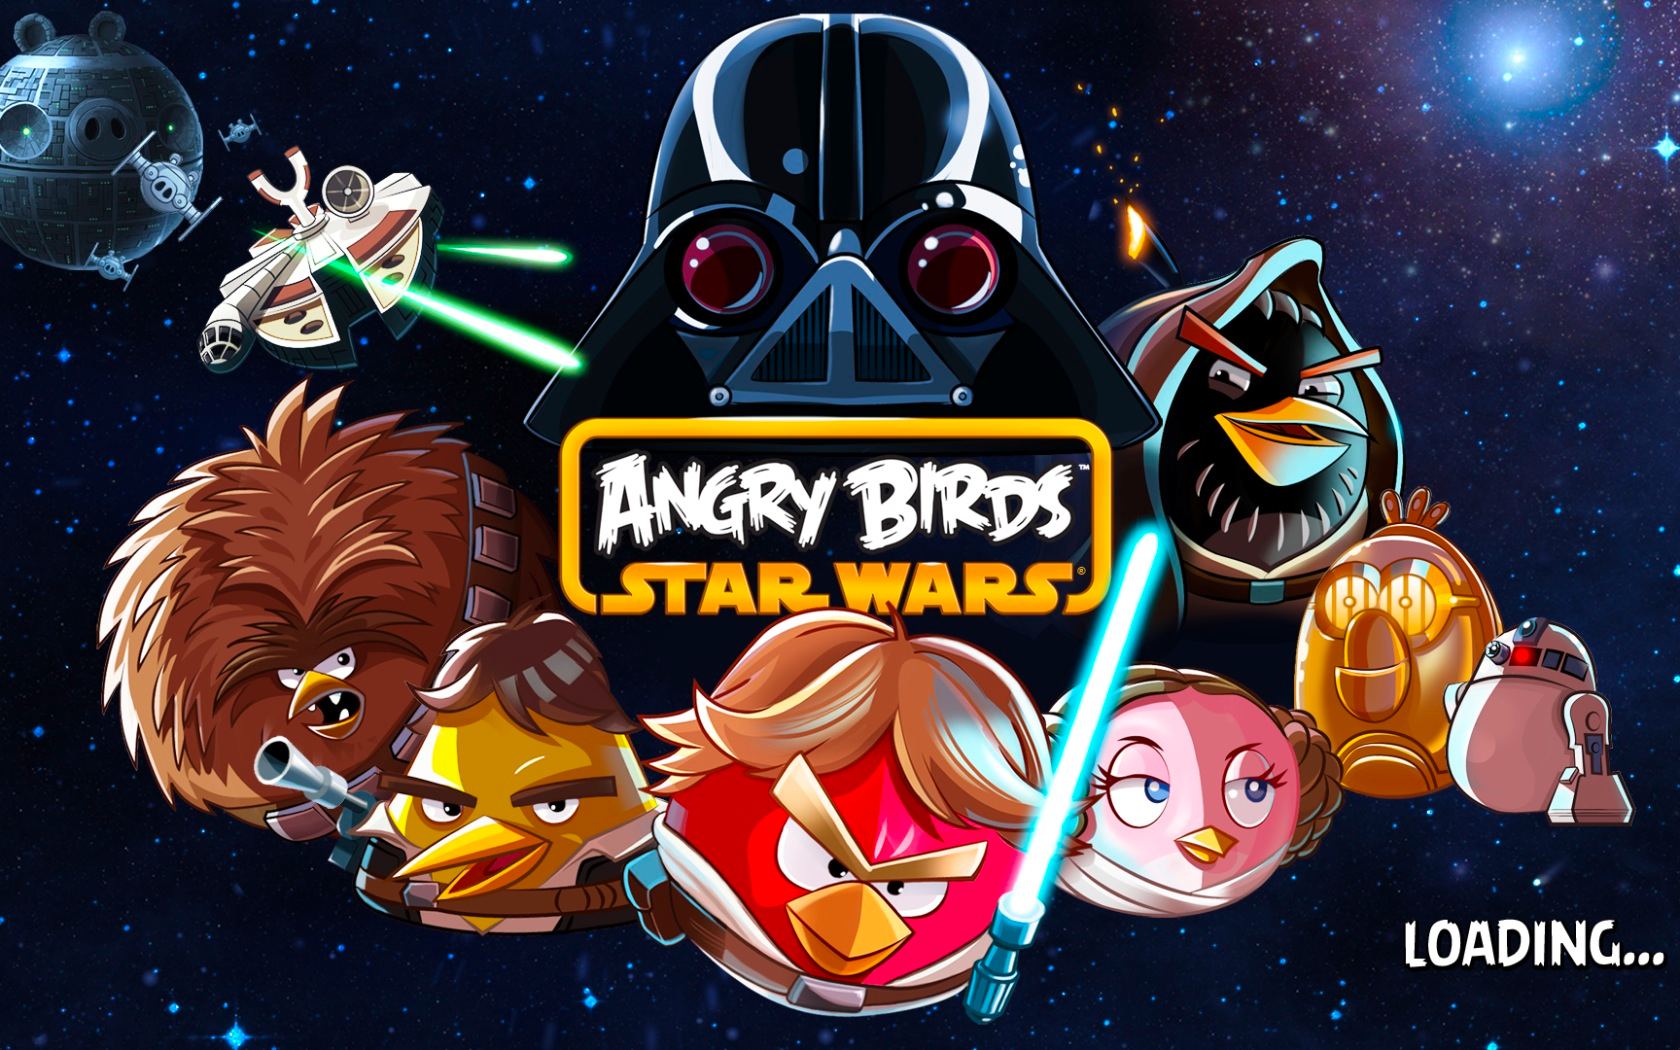 Angry Birds Star Wars 1.0 : Main menu